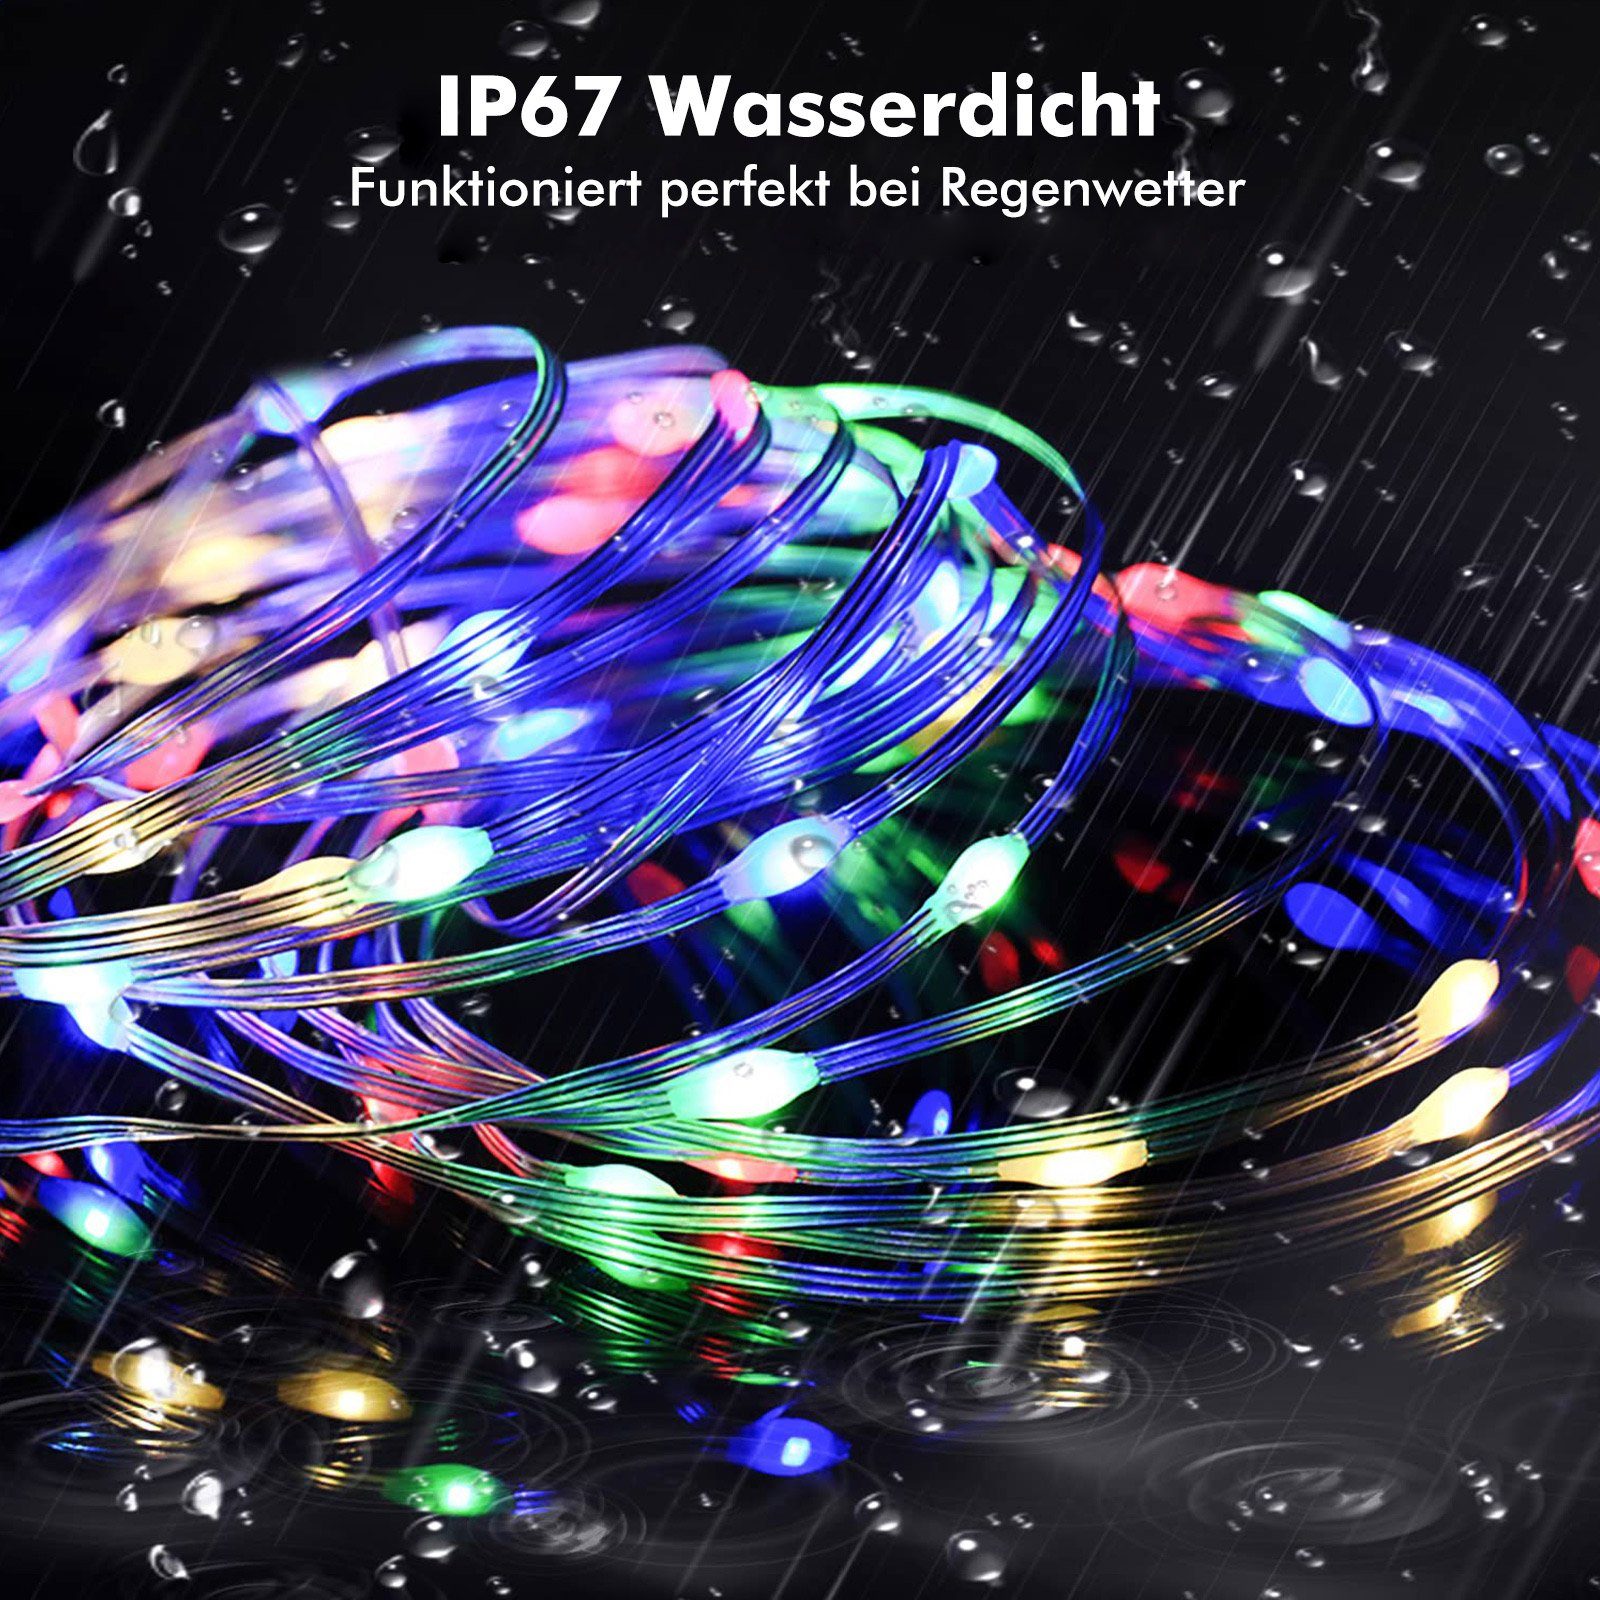 Stripe USB, Rosnek Weihnachtsbaum Musik Smart, Deko App/Fernbedienung; Party, Schlafzimmer 100 LED 10M für RGB, LED, Sync,